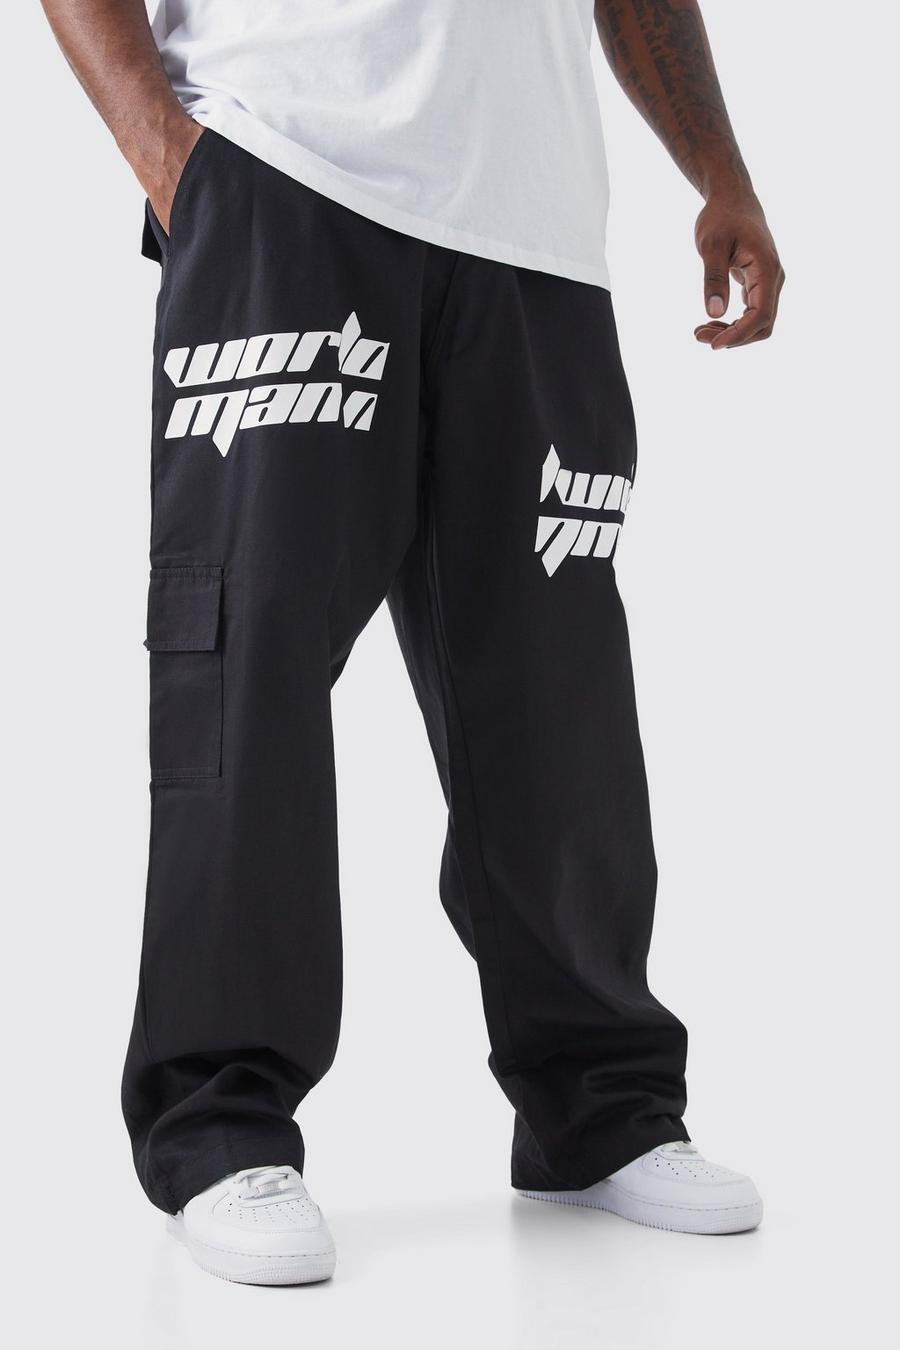 Pantaloni Cargo Plus Size rilassati con stampa di testo effetto patchwork, Black nero